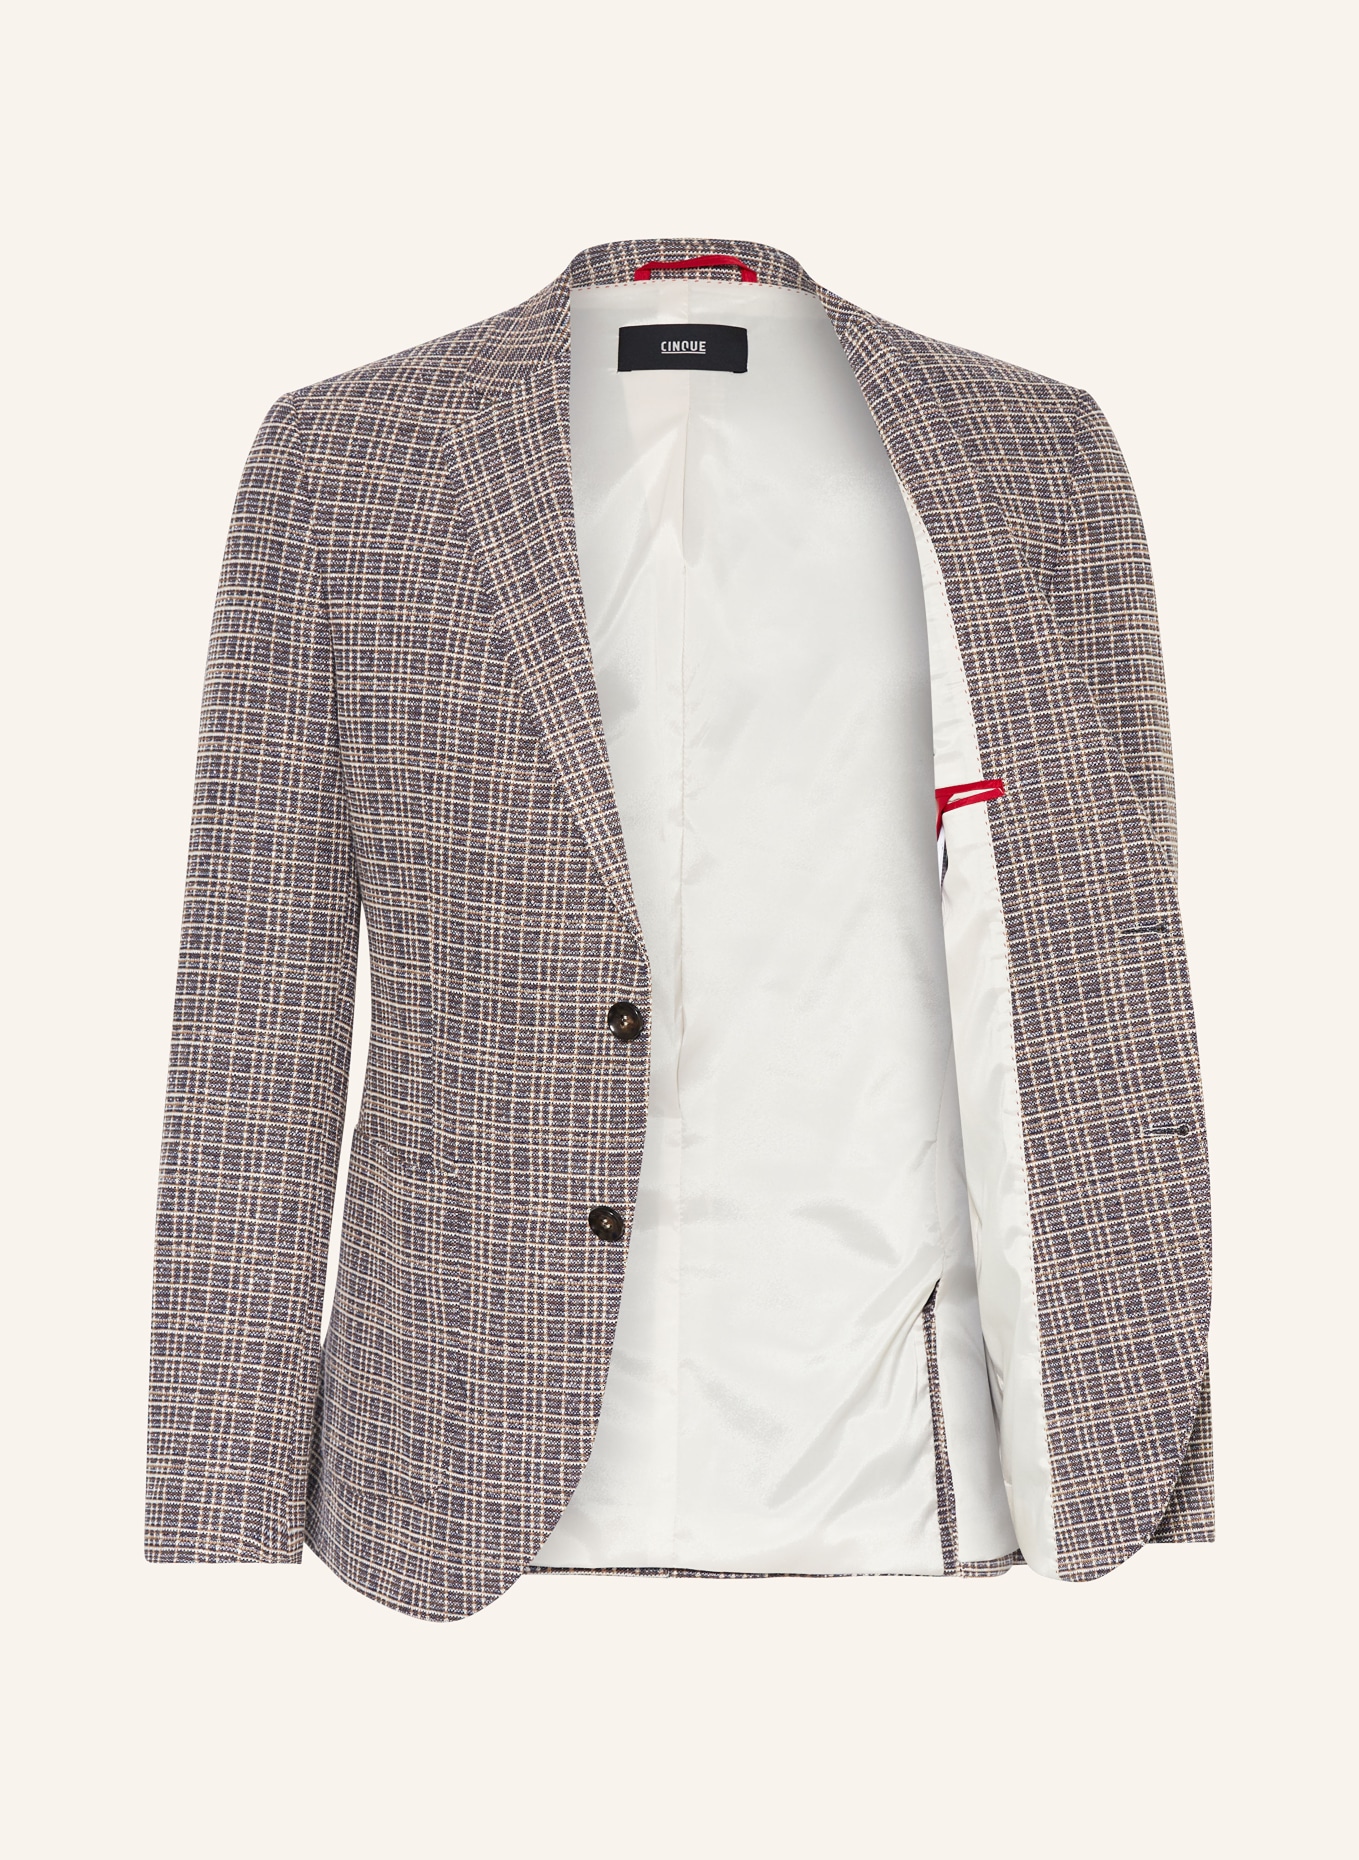 CINQUE Jacket CIDATI extra slim fit, Color: 23 BRAUN (Image 4)